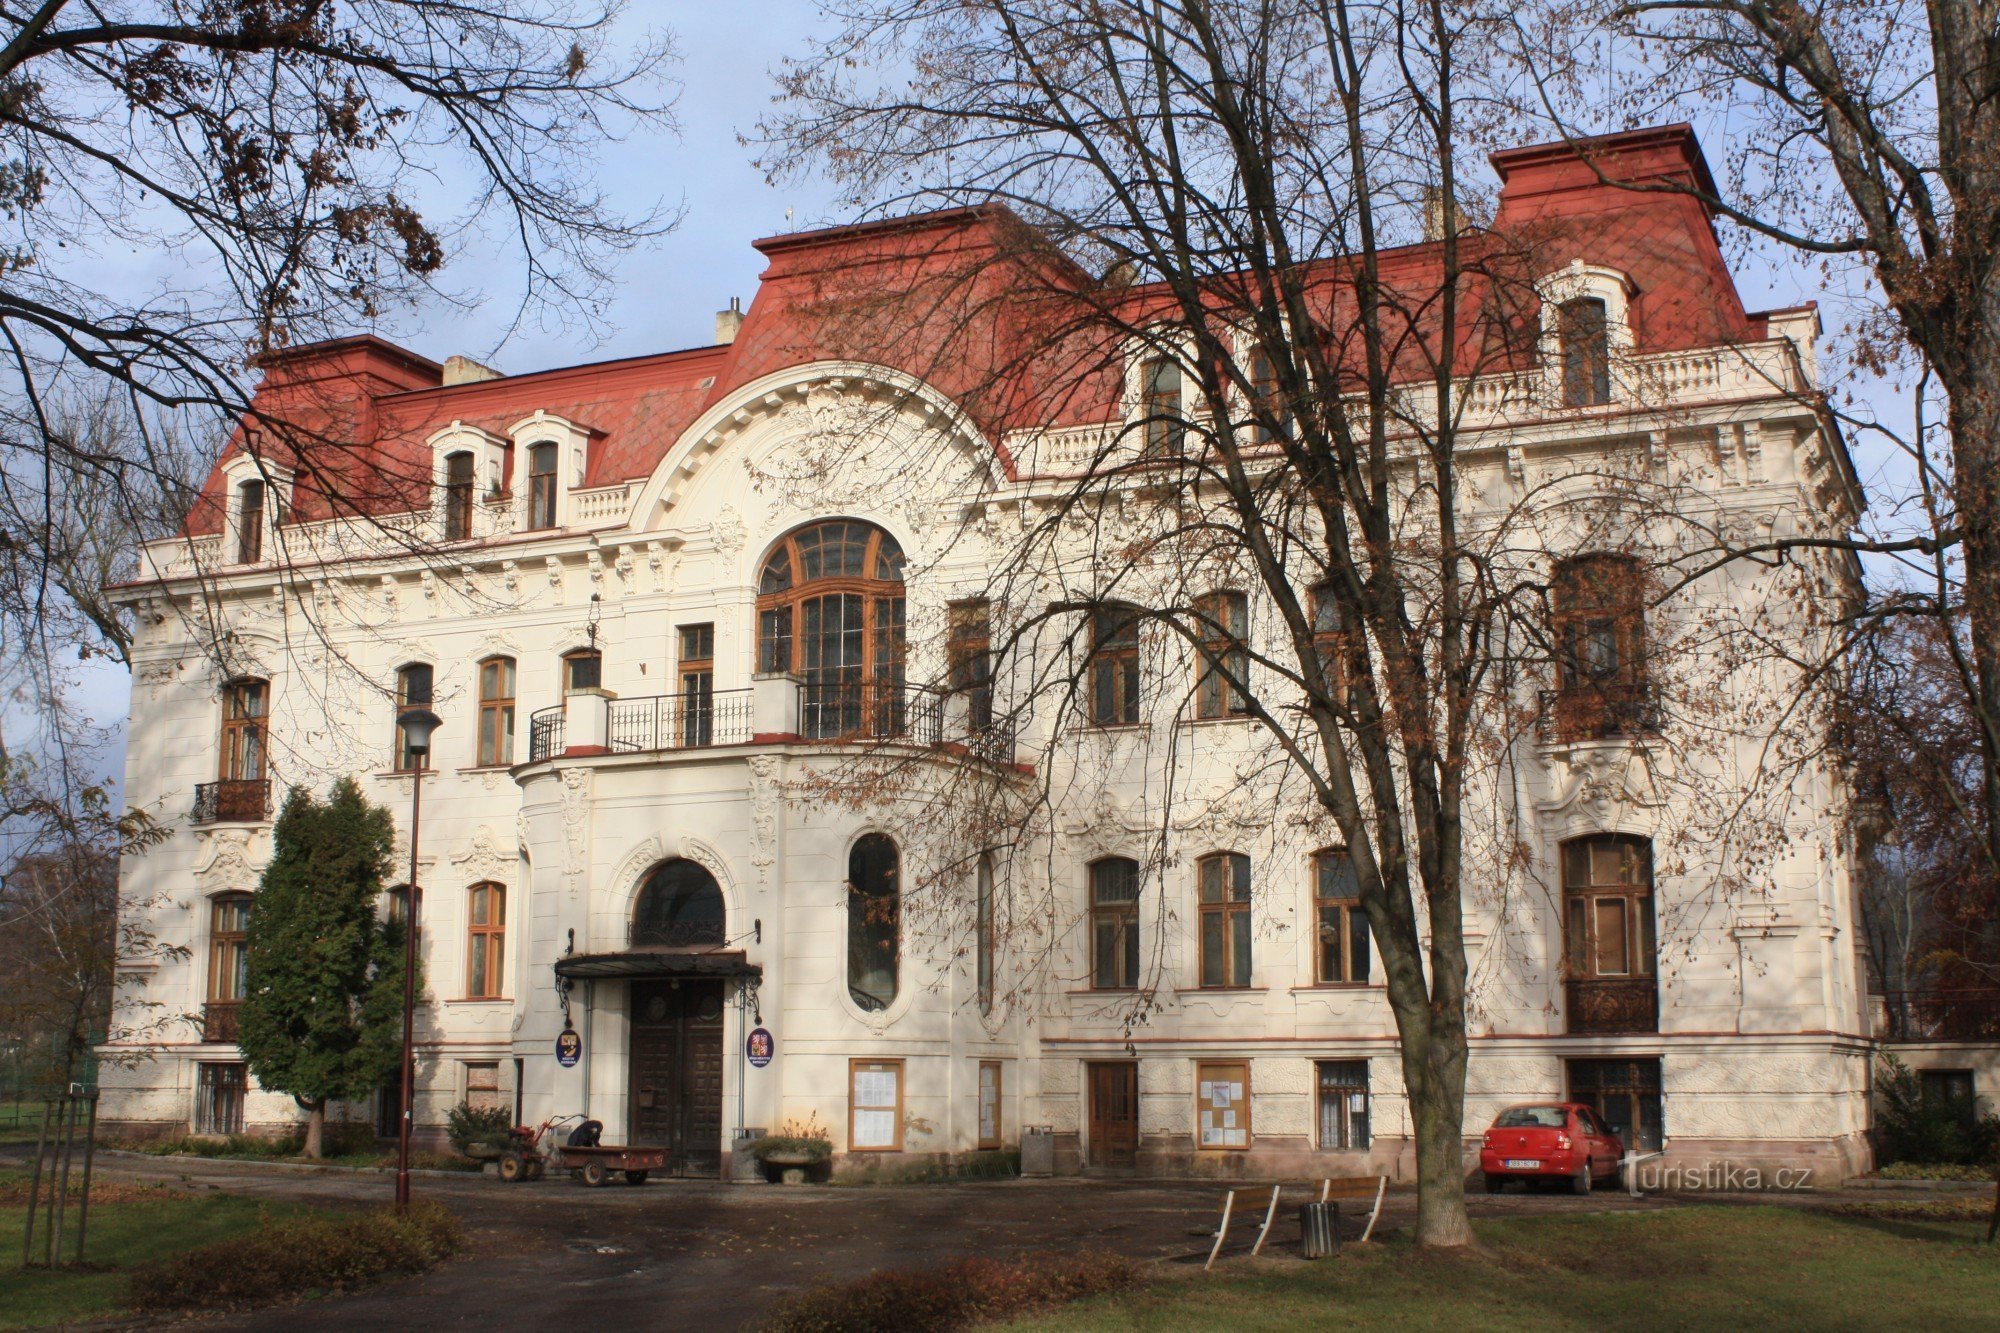 Svitavka - dziś w willi znajduje się urząd miasta